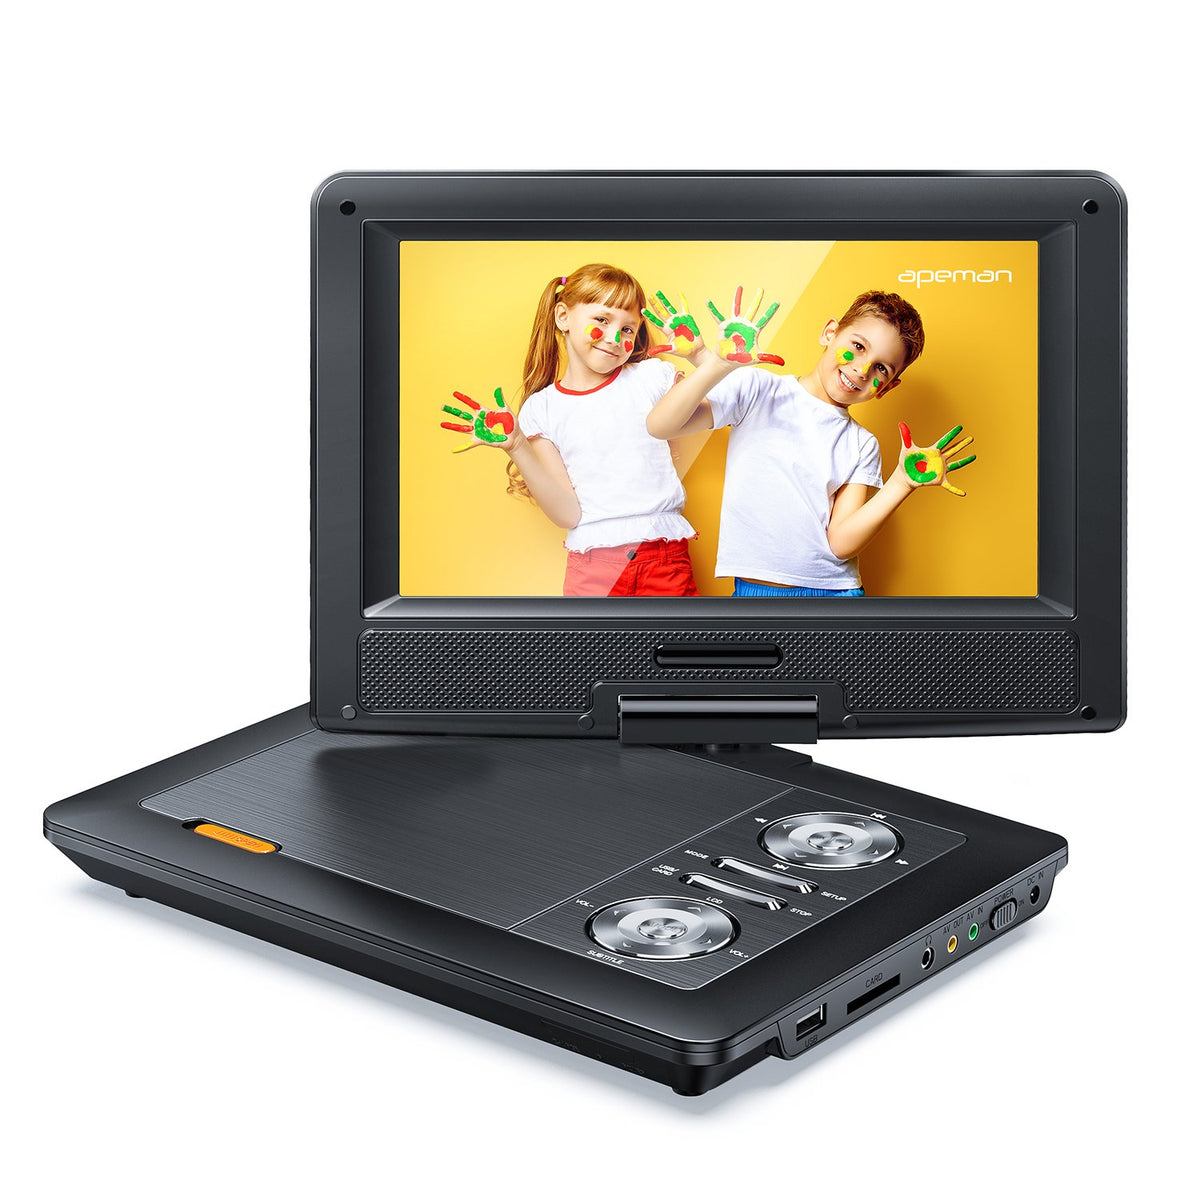 Apeman PV970 Portable DVD Player - Black